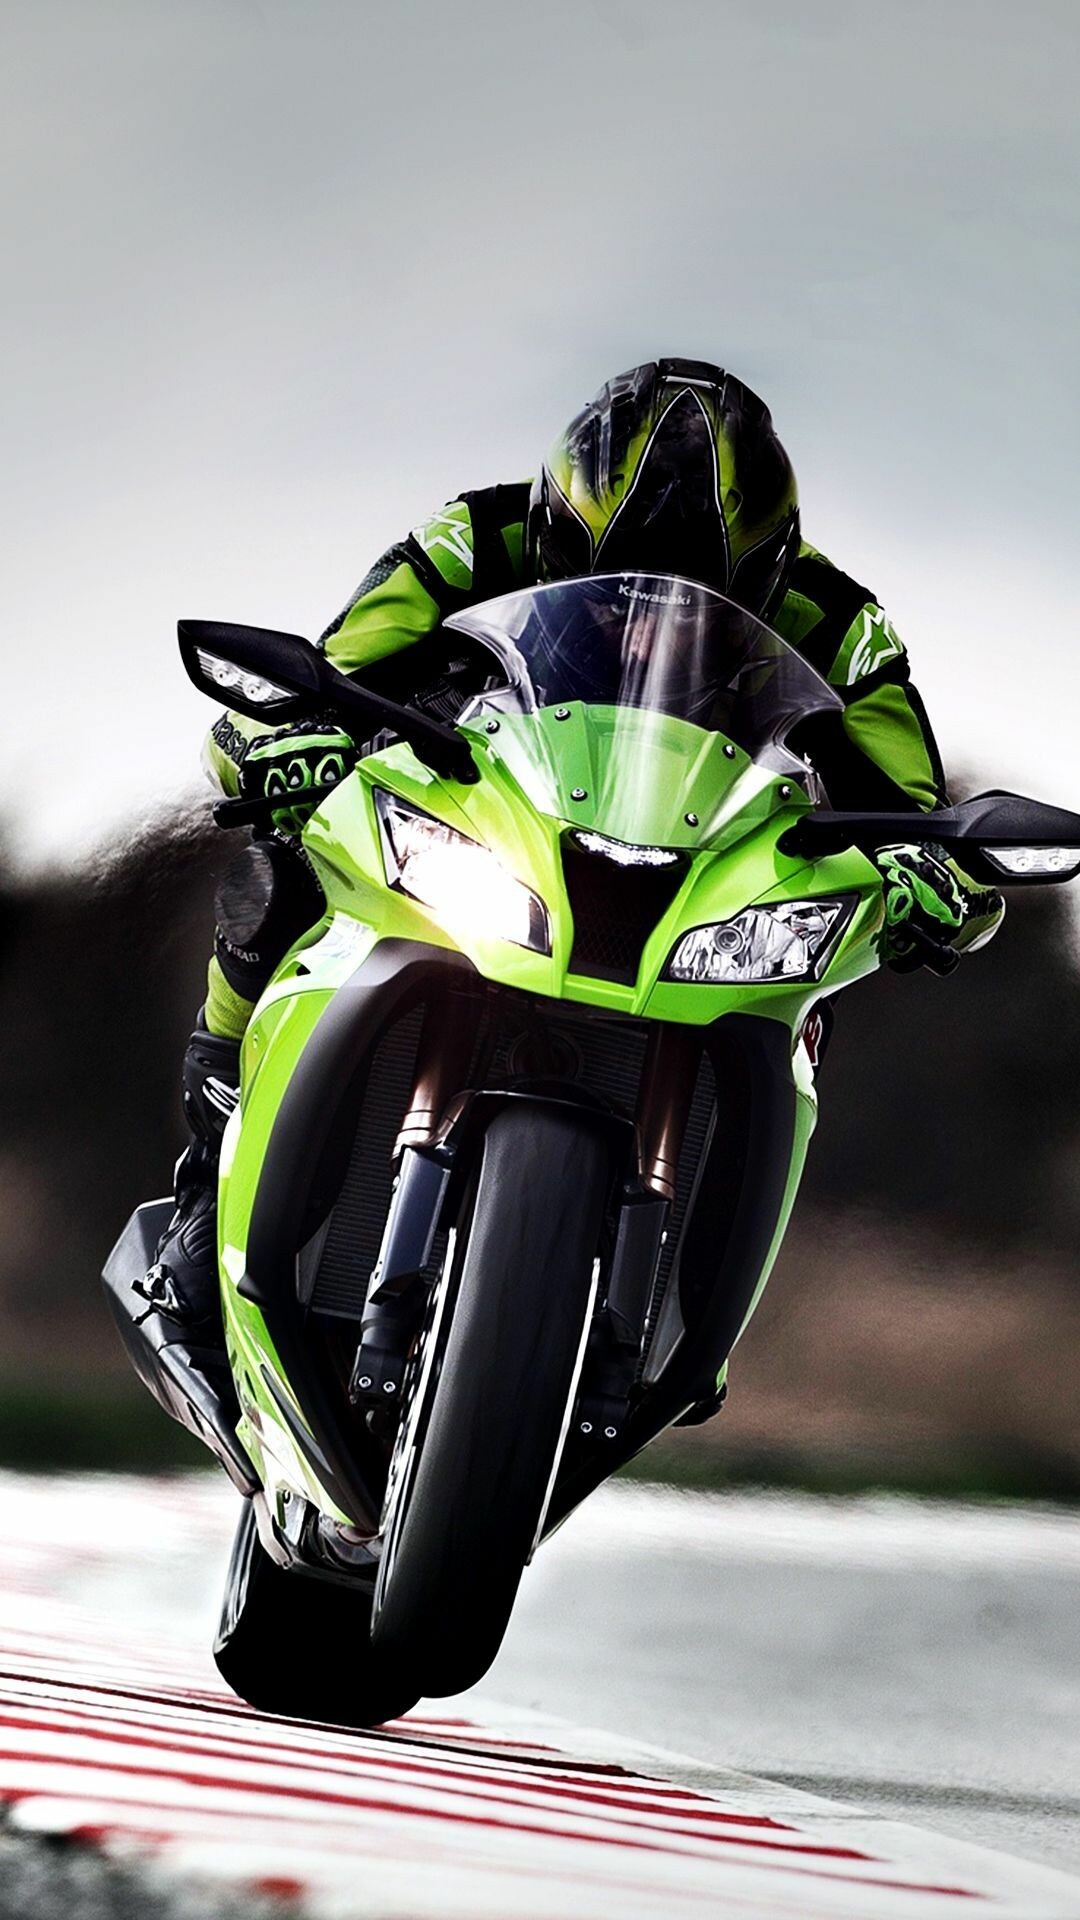 Bike: Kawasaki Ninja, A two-wheeled vehicle that is powered by a motor. 1080x1920 Full HD Background.